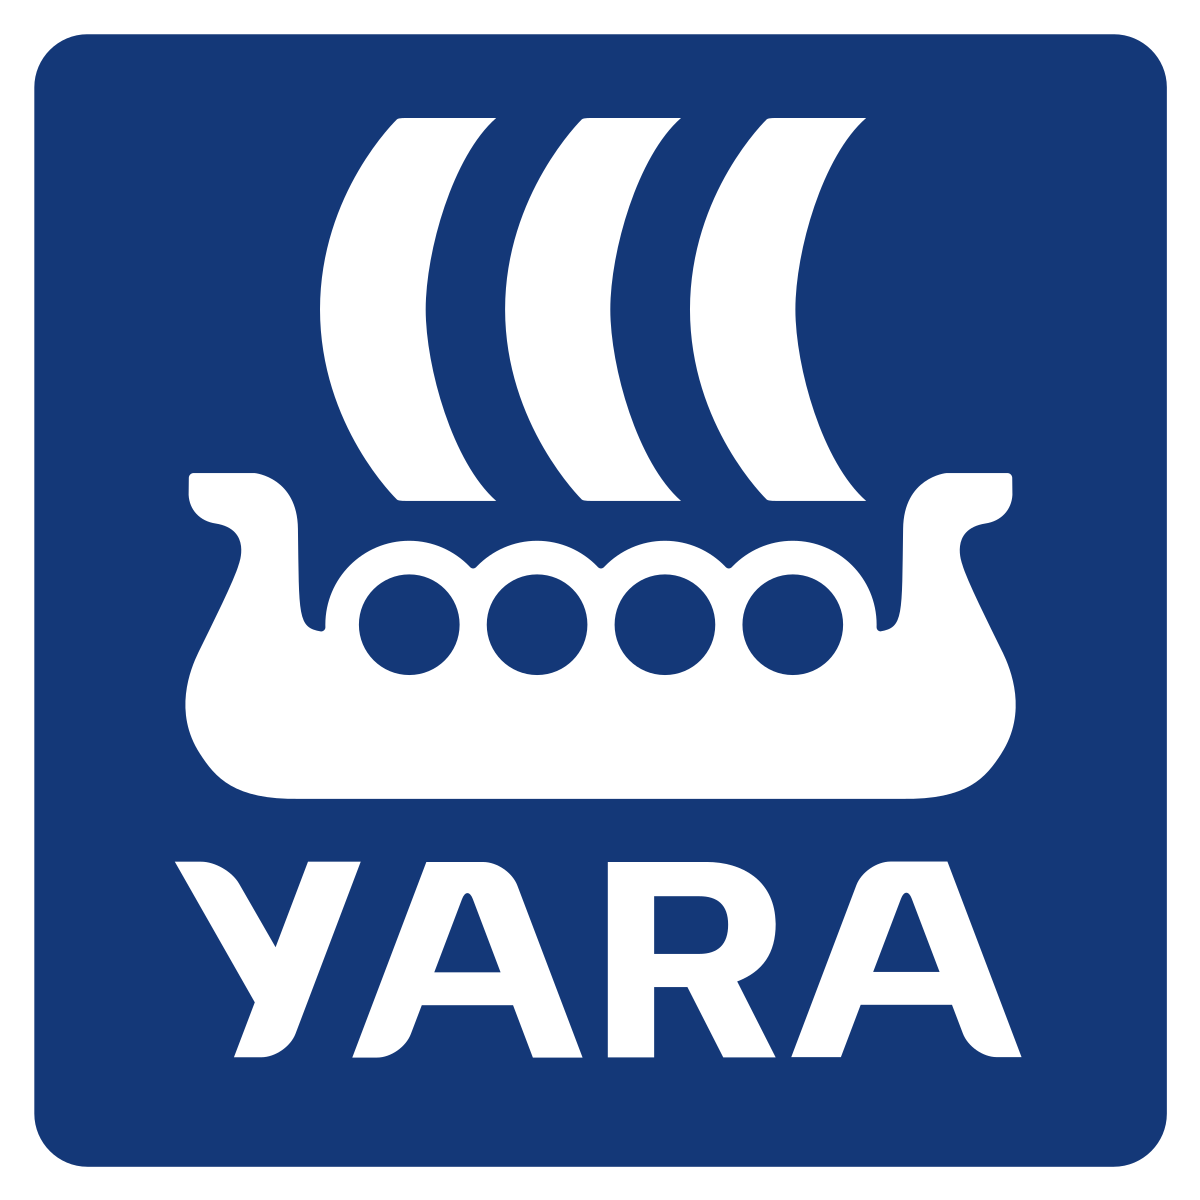 Yara Belgium - LGBTQ collation